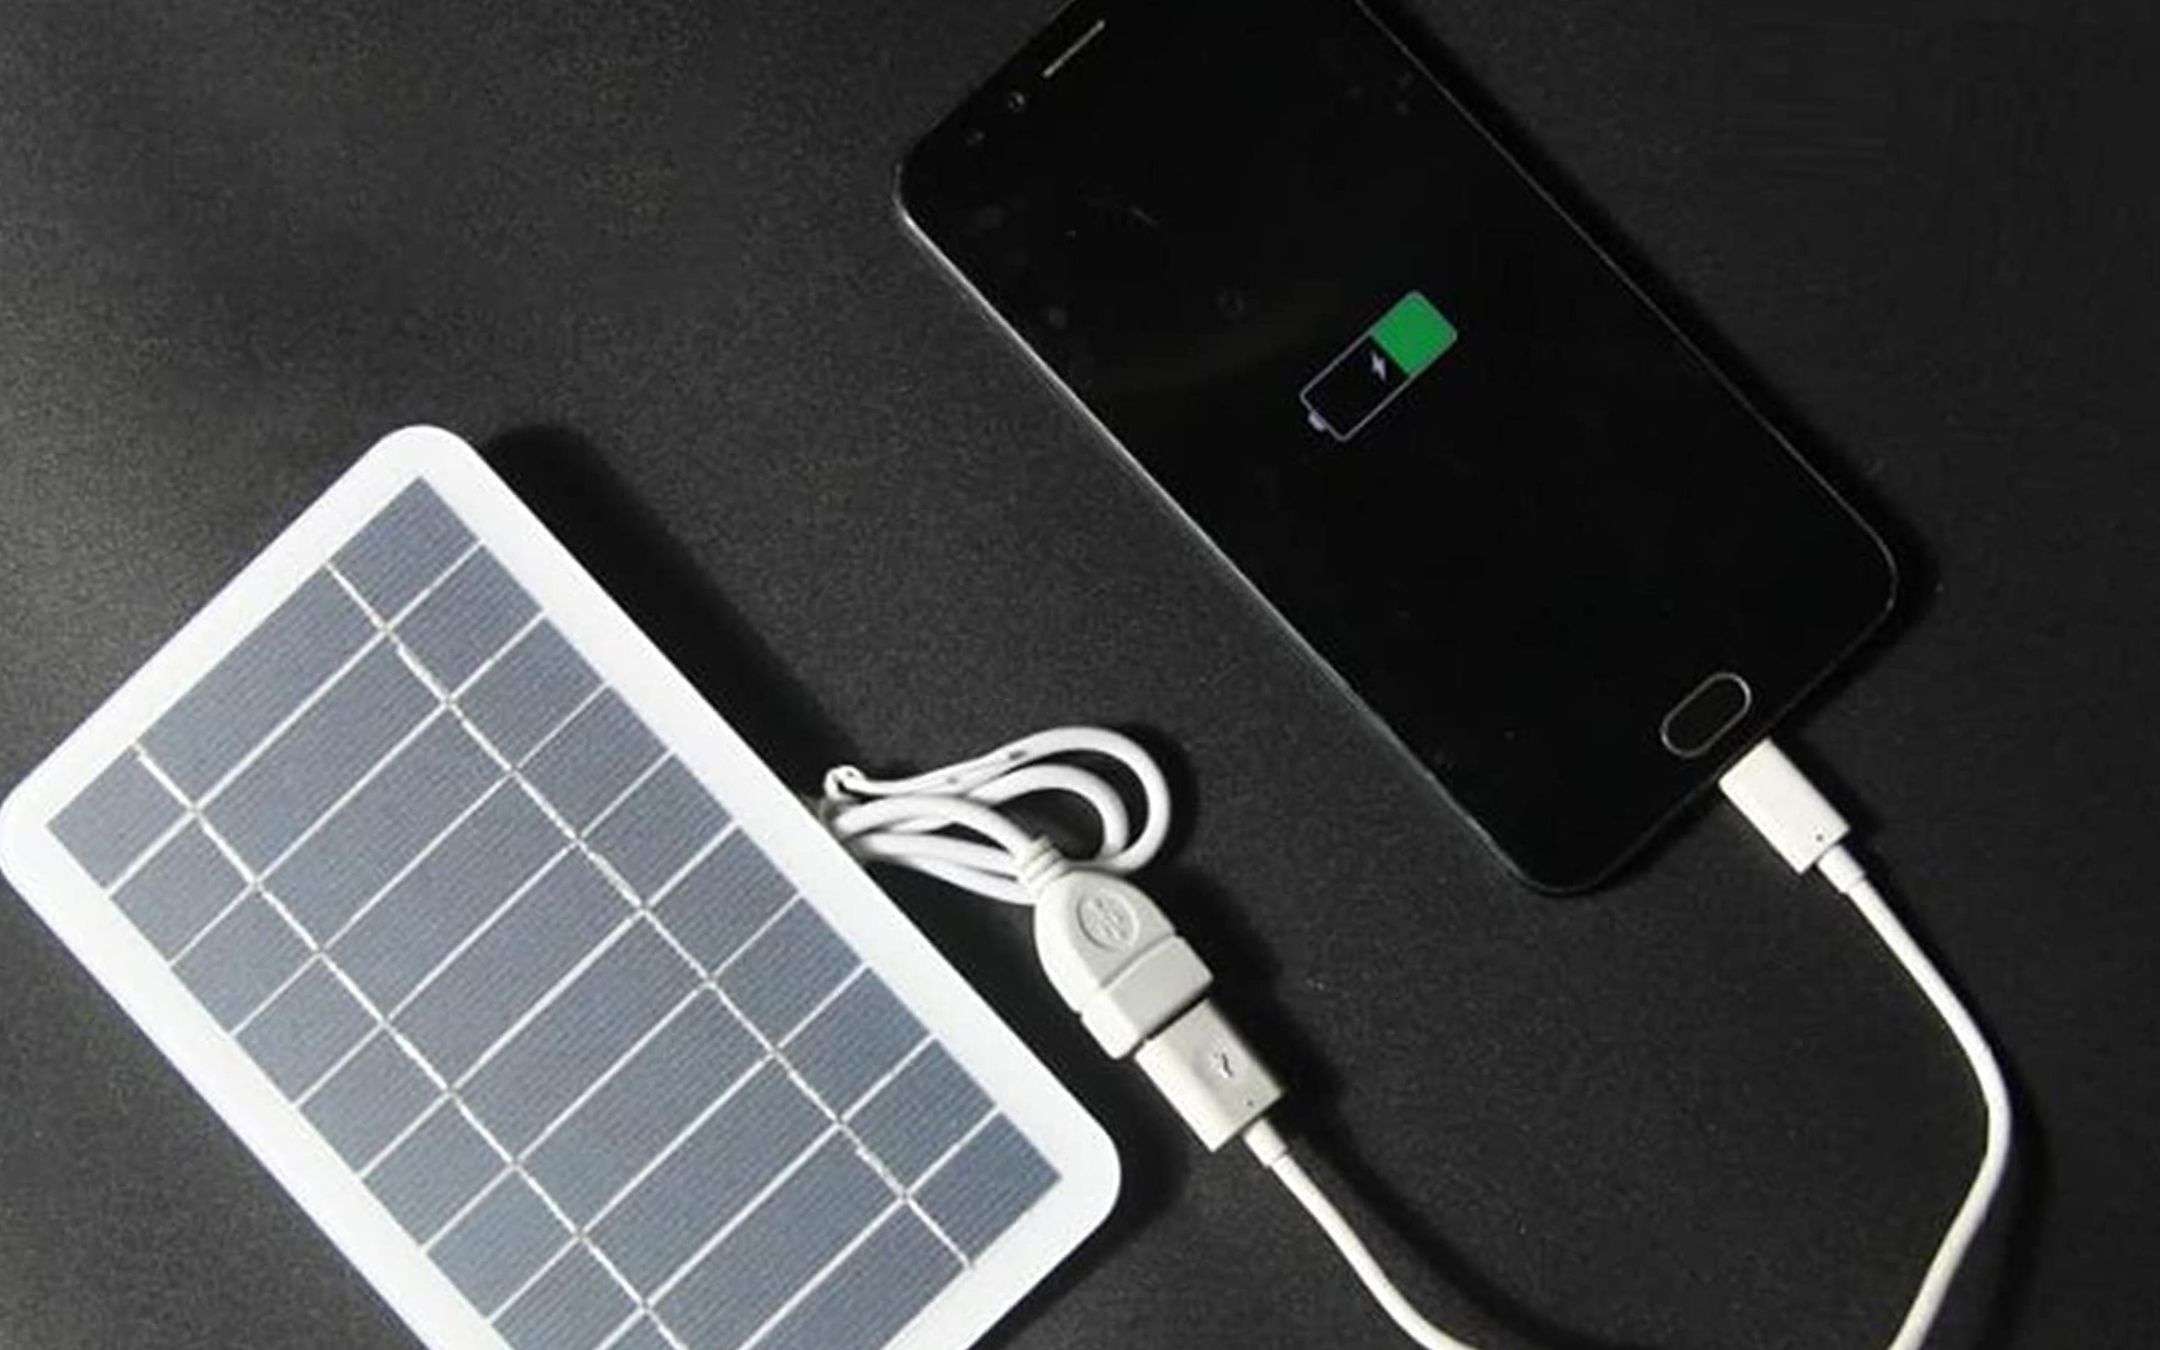 Pannello solare USB a 10€: ricarichi lo smartphone dappertutto (-50%)